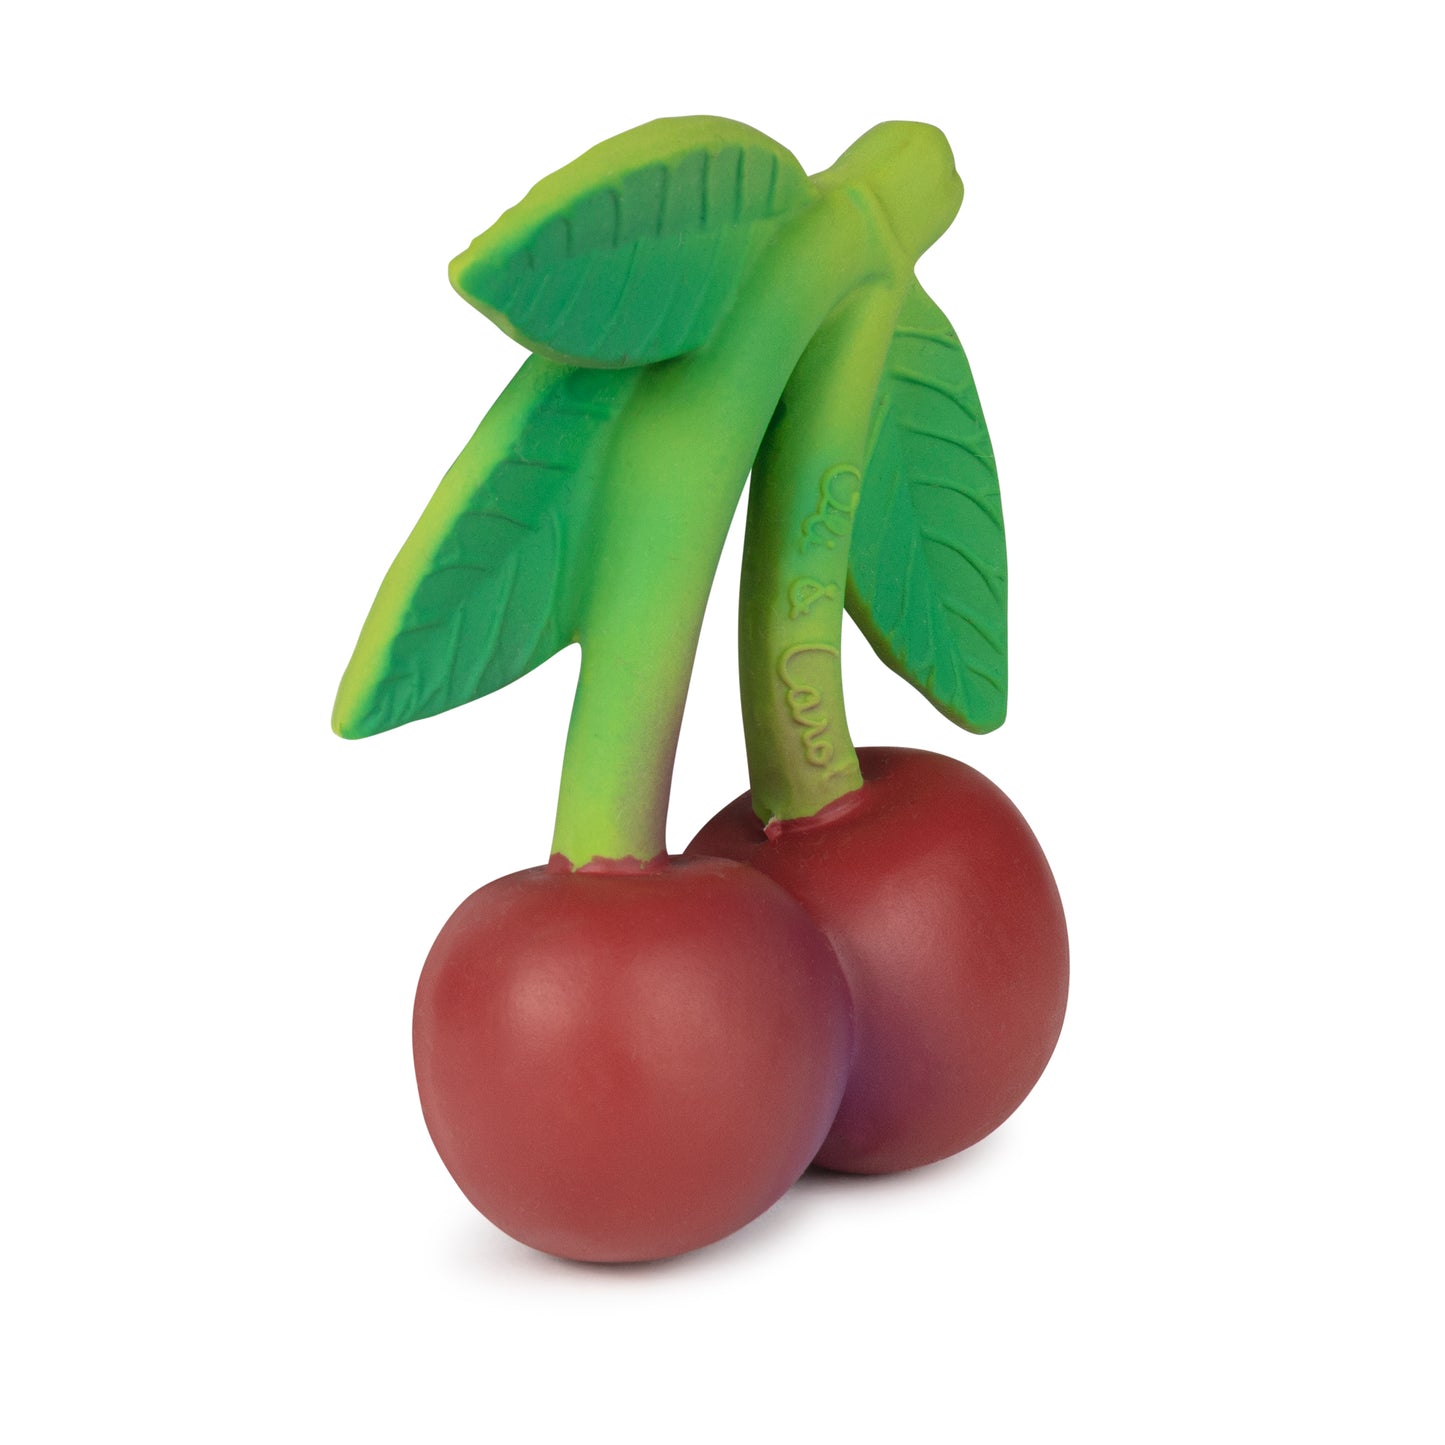 Mordedor - Mery The Cherry